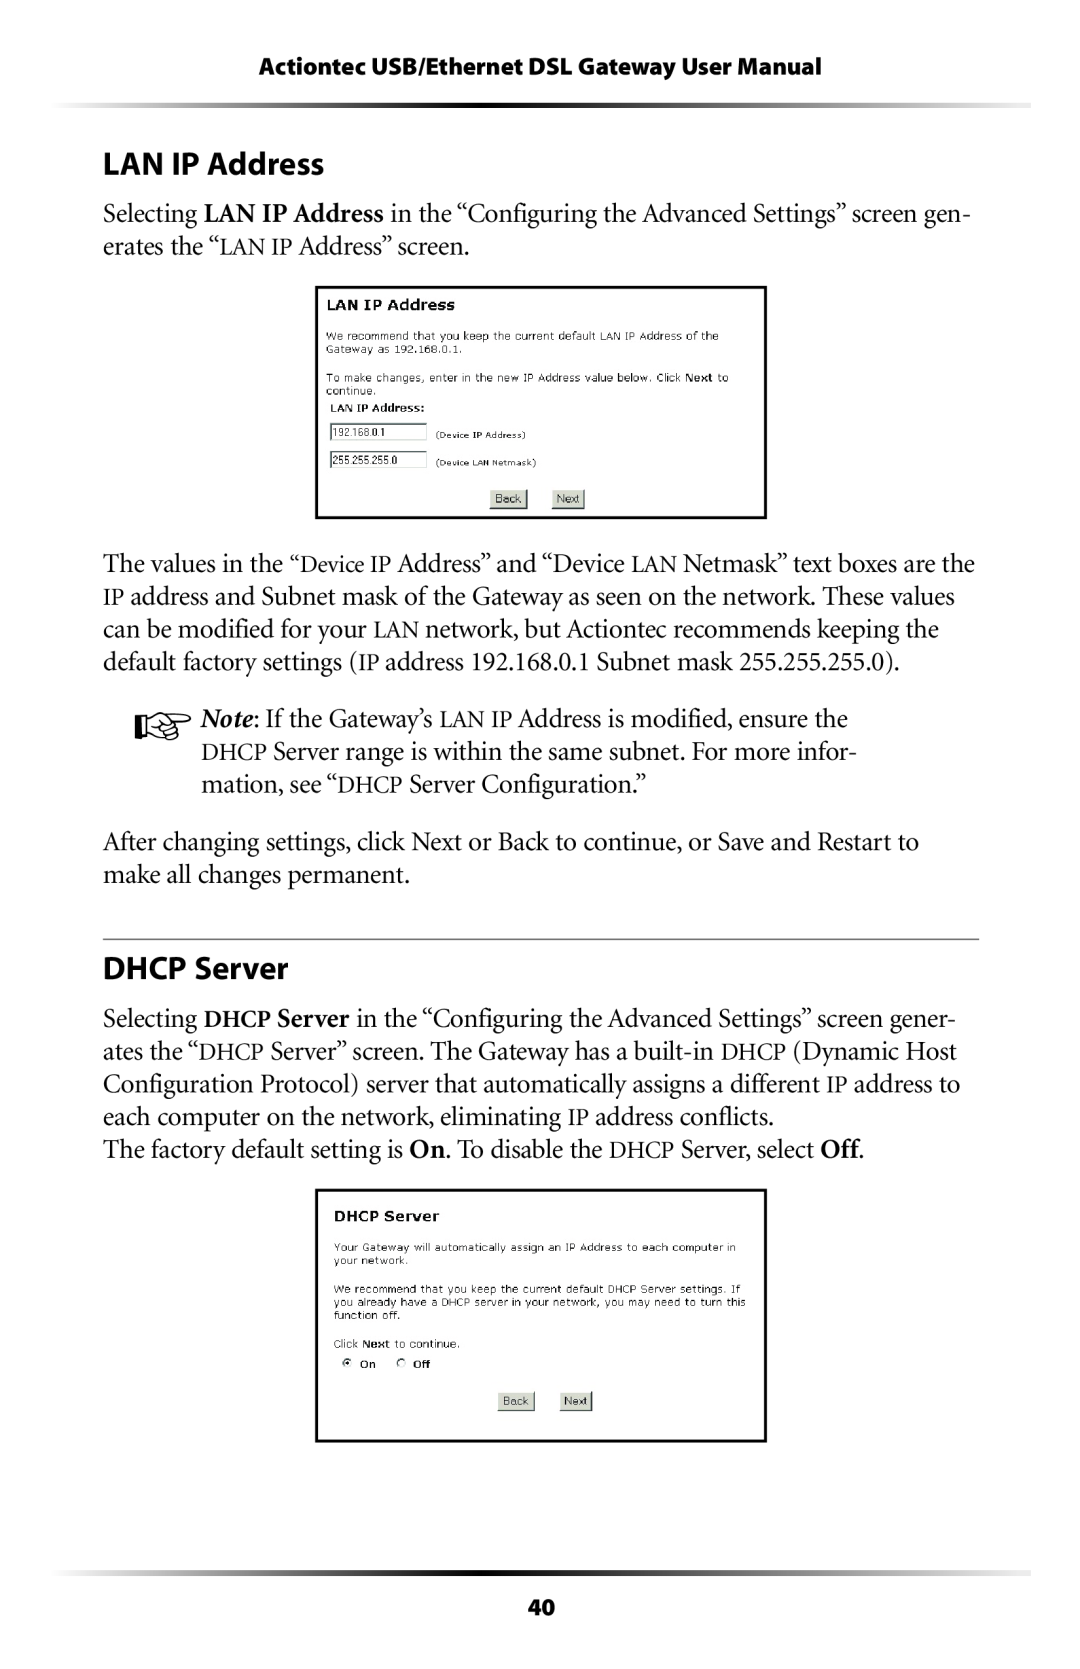 Gateway GT704 user manual LAN IP Address, DHCP Server 